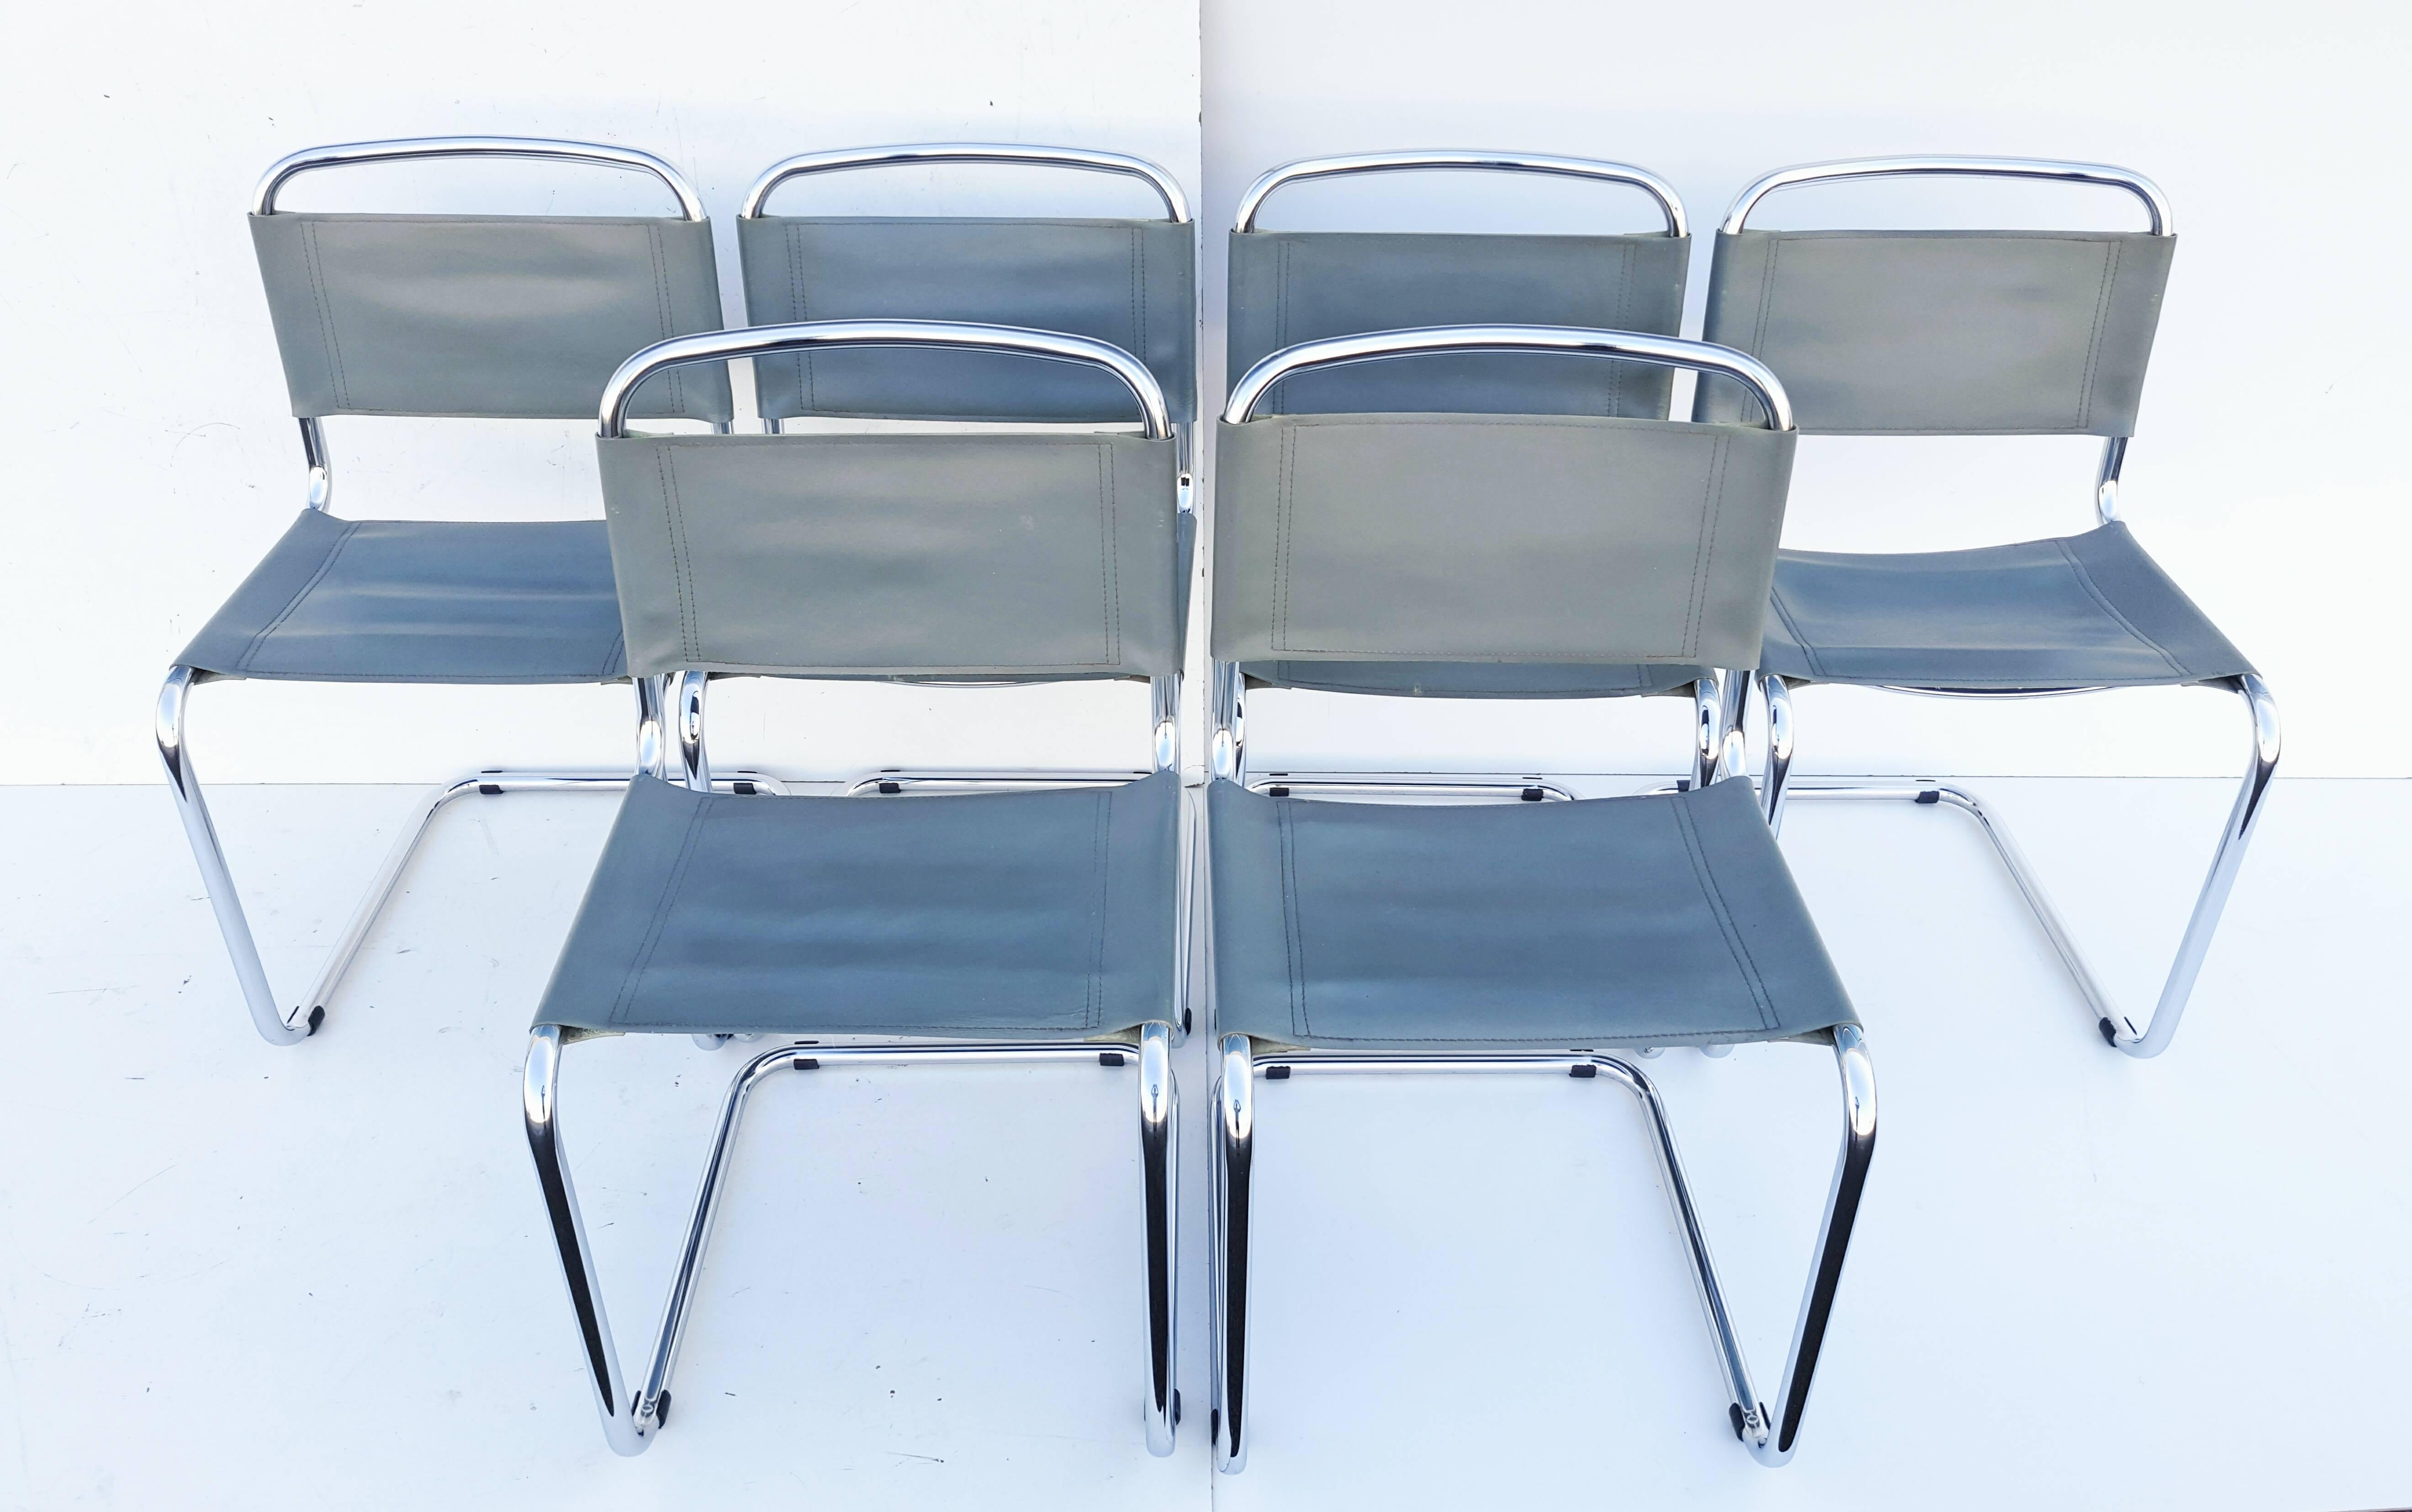 Un bel ensemble de six chaises de salle à manger conçu par Mart Stam pour Fasem, Italie, années 1970.
Ces chaises ont une structure métallique tubulaire en porte-à-faux avec une belle assise et un dossier en cuir de selle gris.
Ils sont dans un